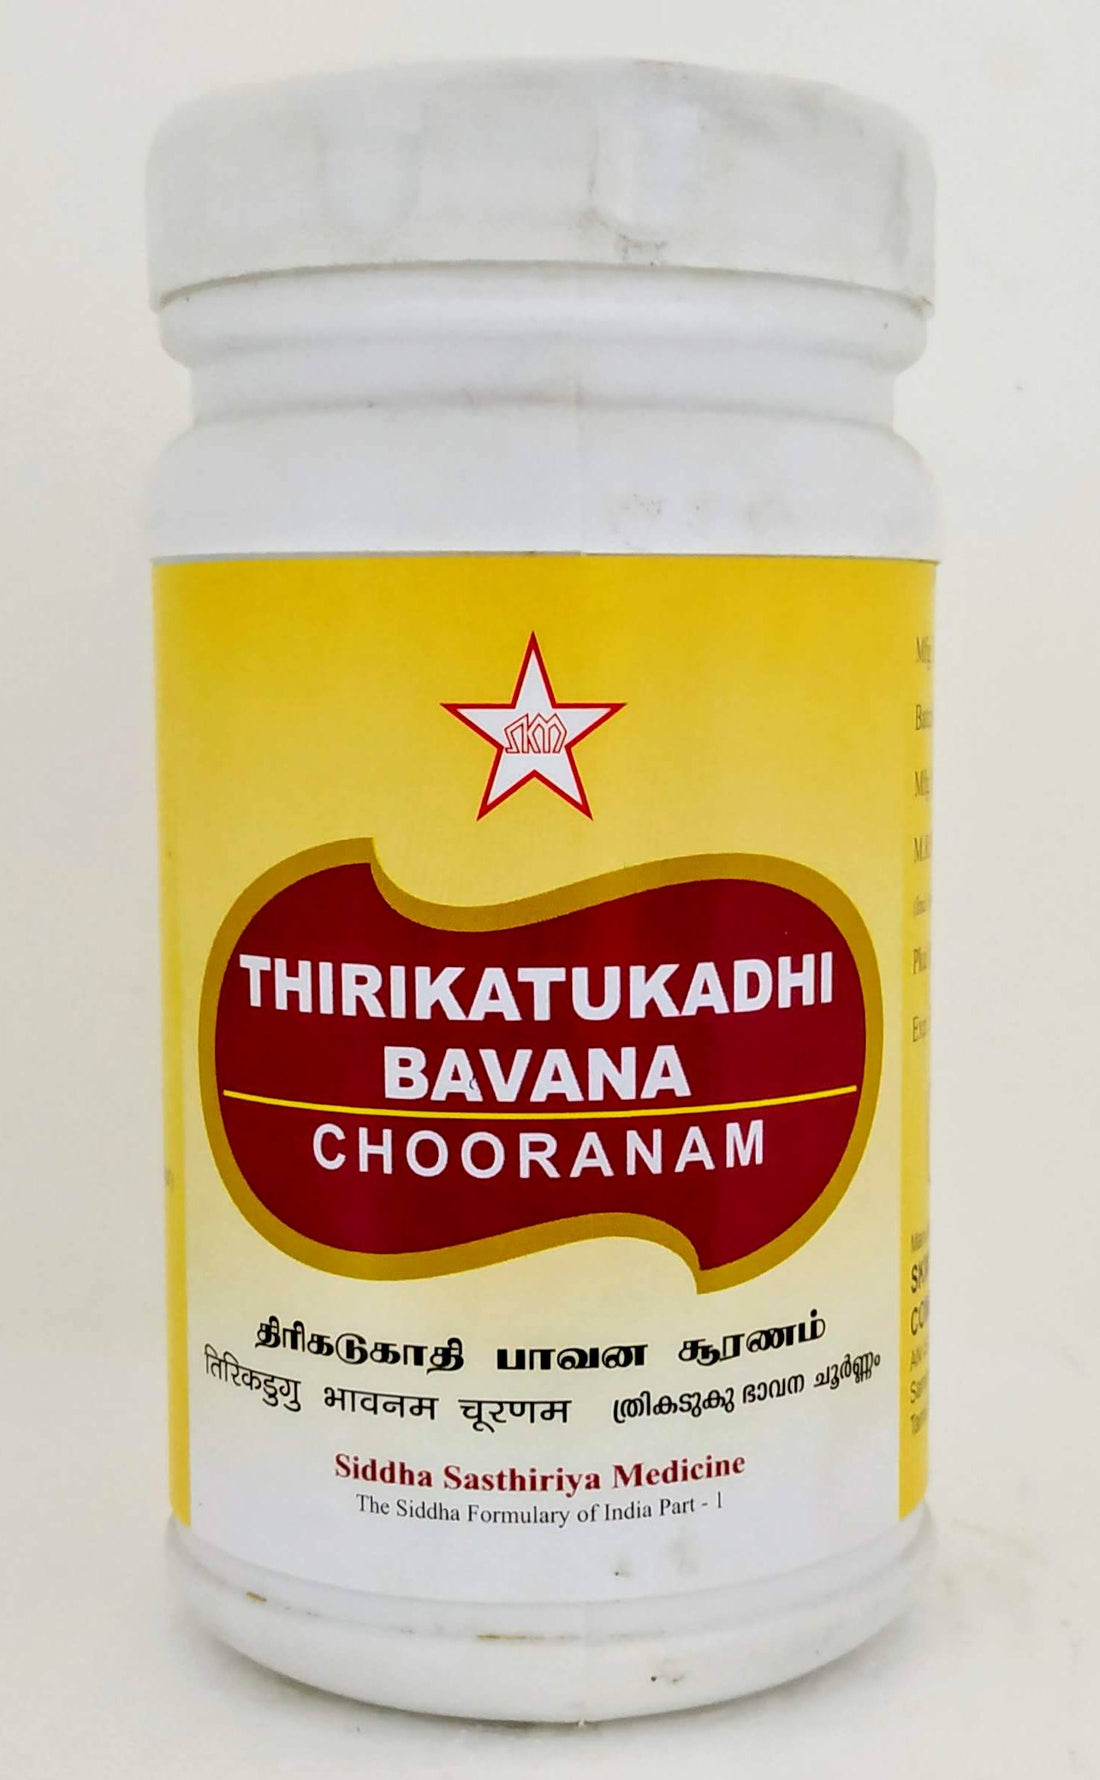 Shop Thirikatukadhi Bavana Churnam 100gm at price 290.00 from SKM Online - Ayush Care